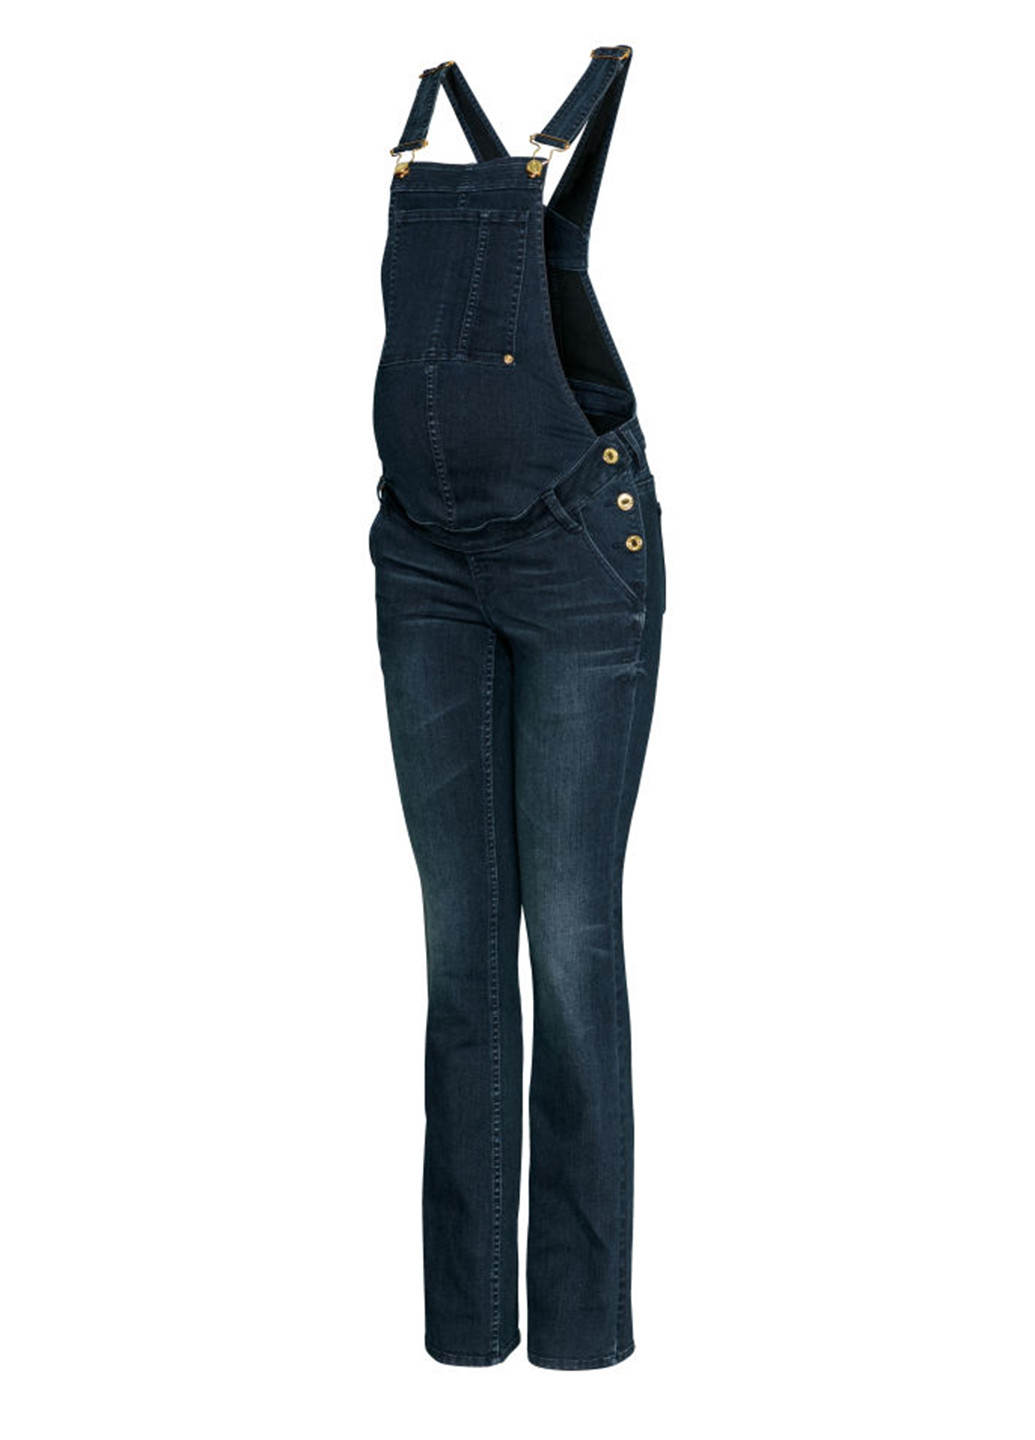 Комбинезон для беременных H&M комбинезон-брюки тёмно-синий денил